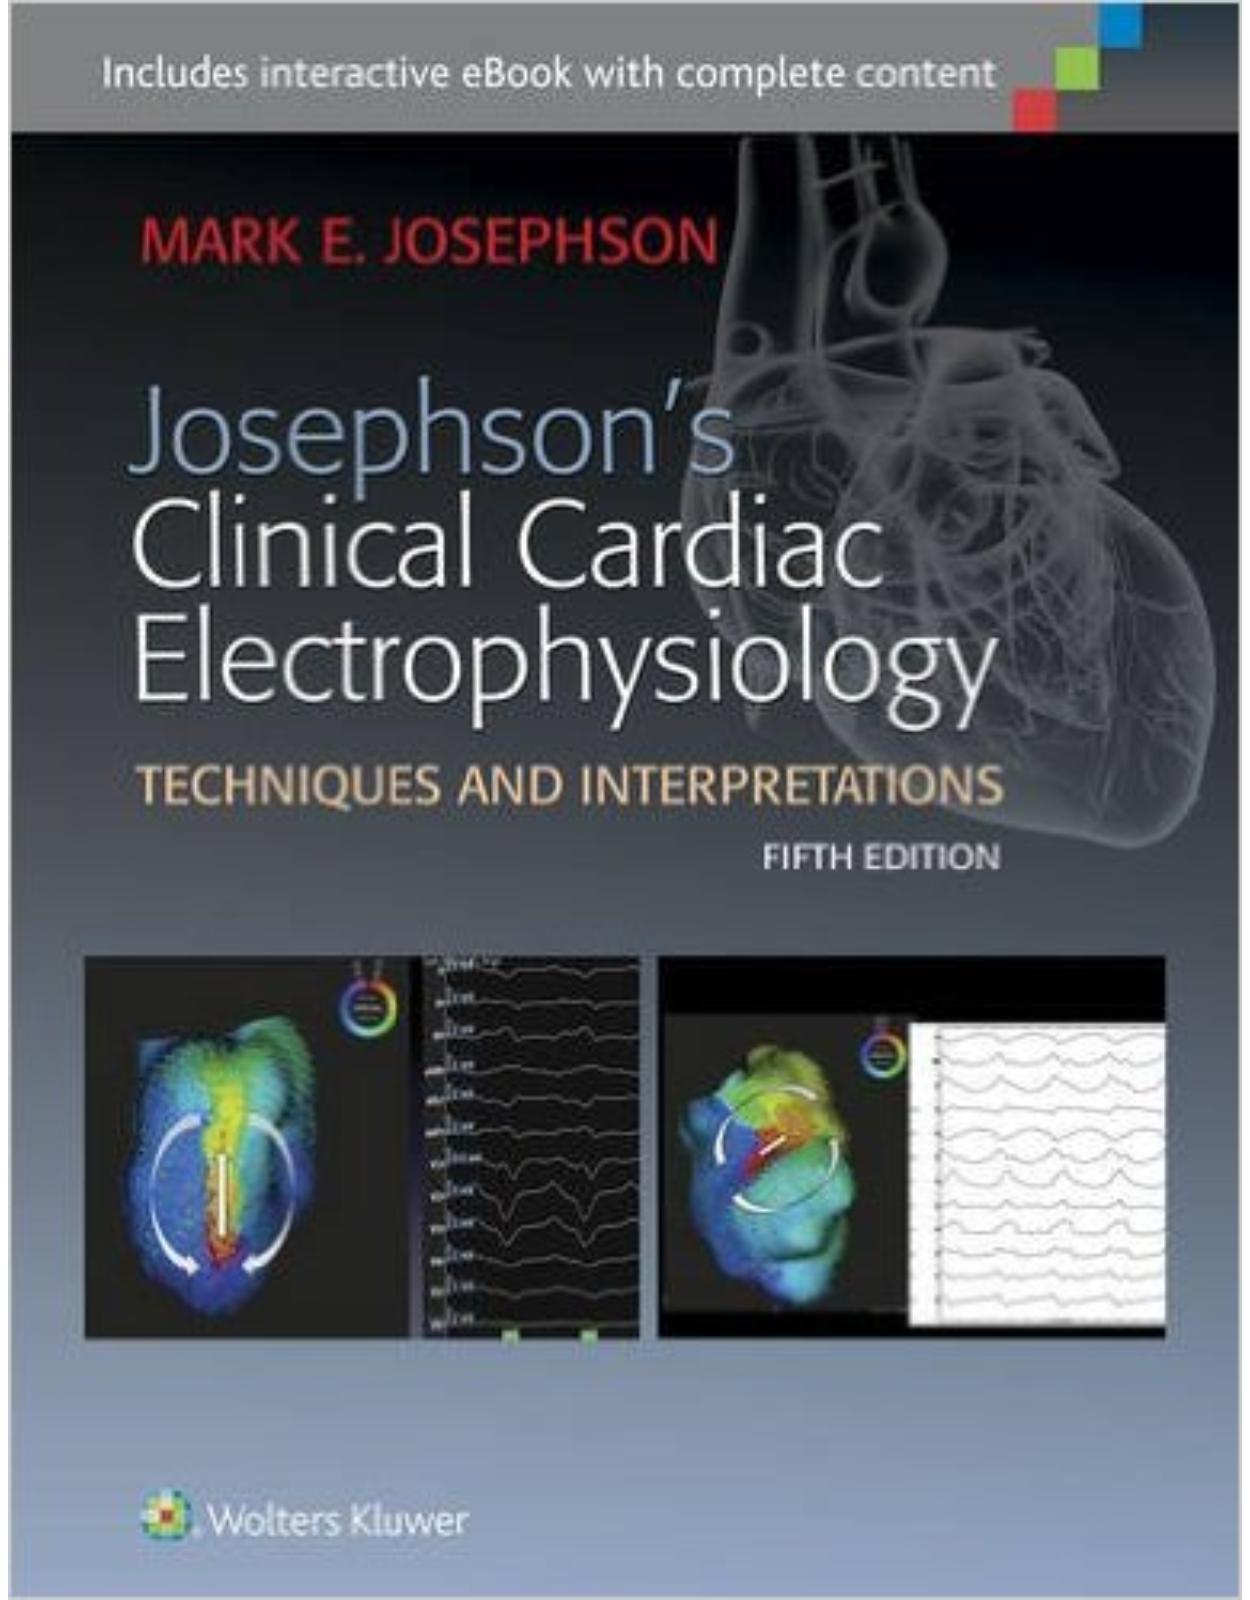 Josephson's Clinical Cardiac Electrophysiology 